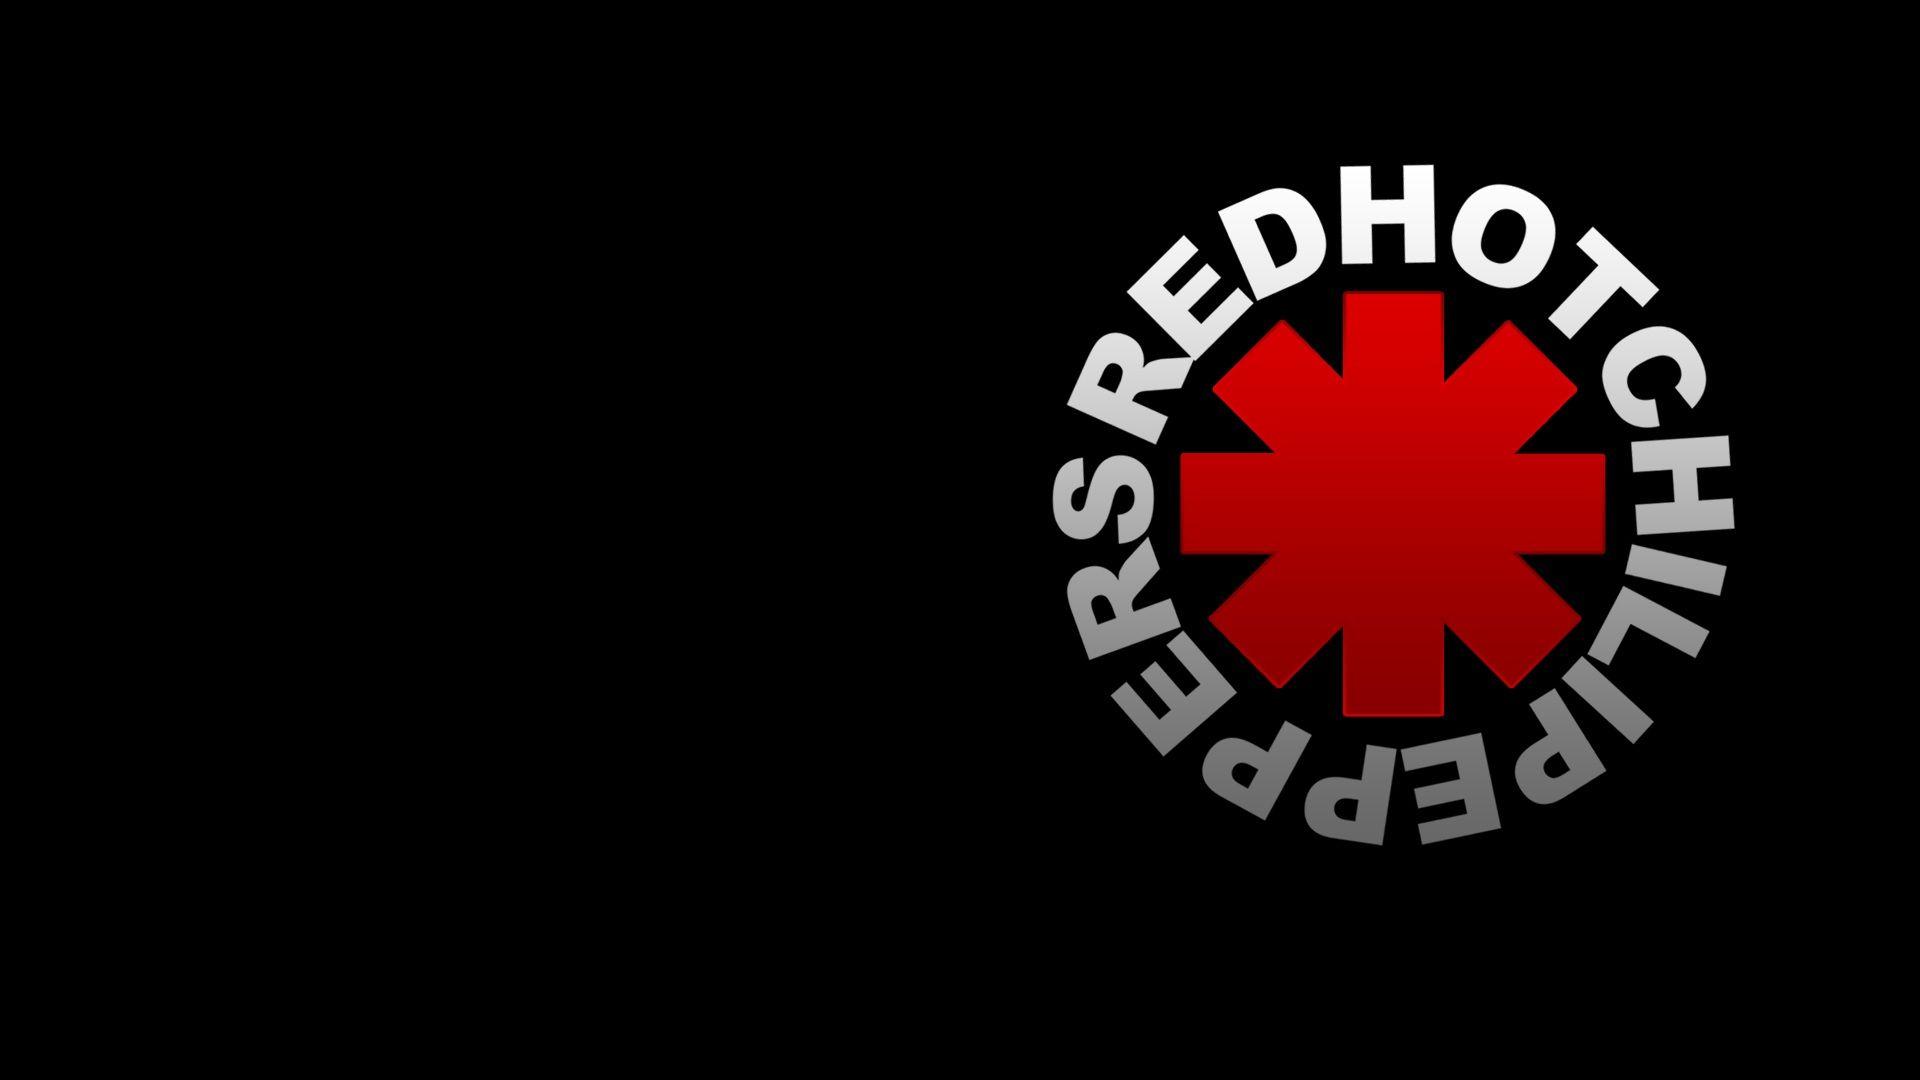 Được đặt tên theo ban nhạc rock nổi tiếng, bức ảnh Red Hot Chili Peppers sẽ khiến bạn nhớ lại những giai điệu điêu luyện của những người nghệ sĩ. Hãy cùng tìm hiểu về bức ảnh đầy màu sắc và nhiệt huyết này để cảm nhận cảm xúc tuyệt vời.